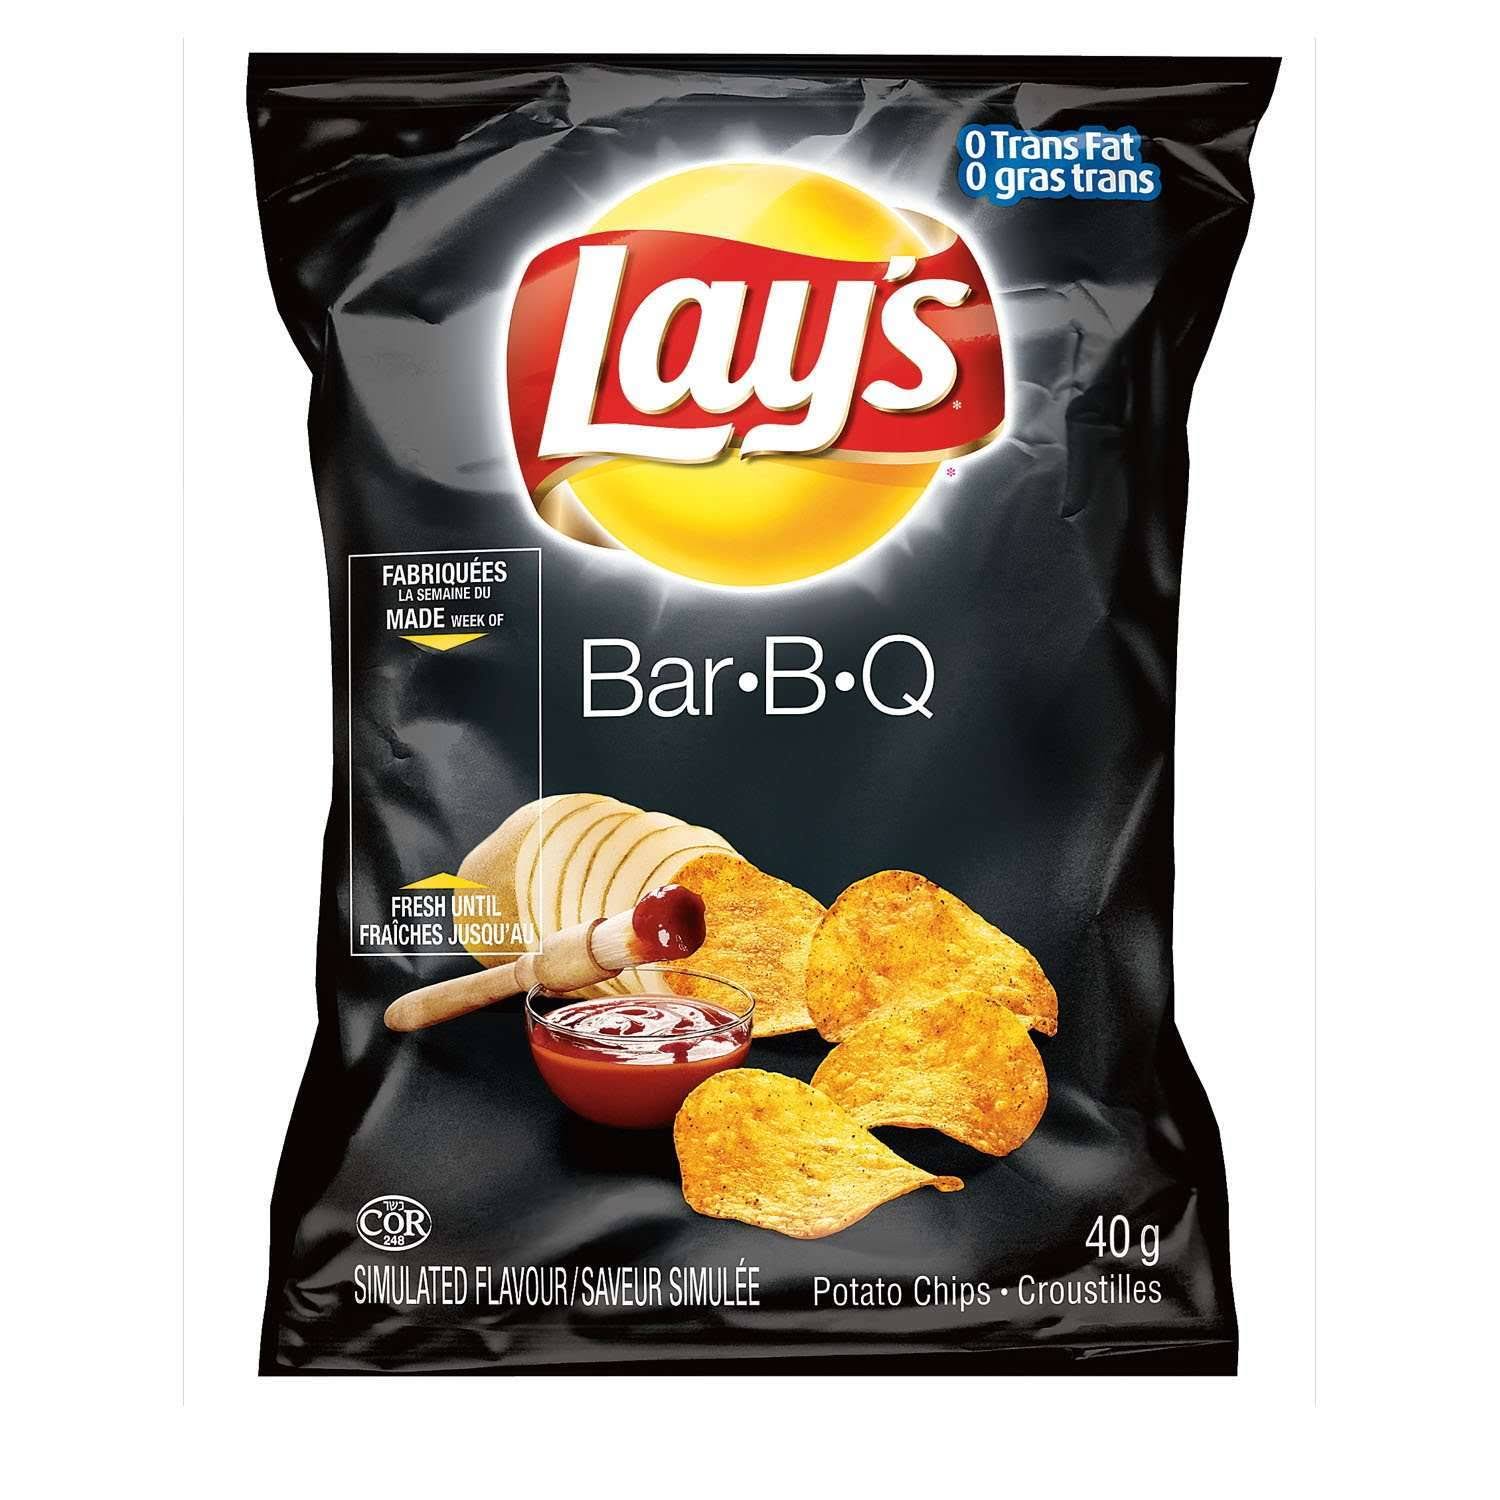 Lay's Potato Chips - Barbecue, 1.5 oz